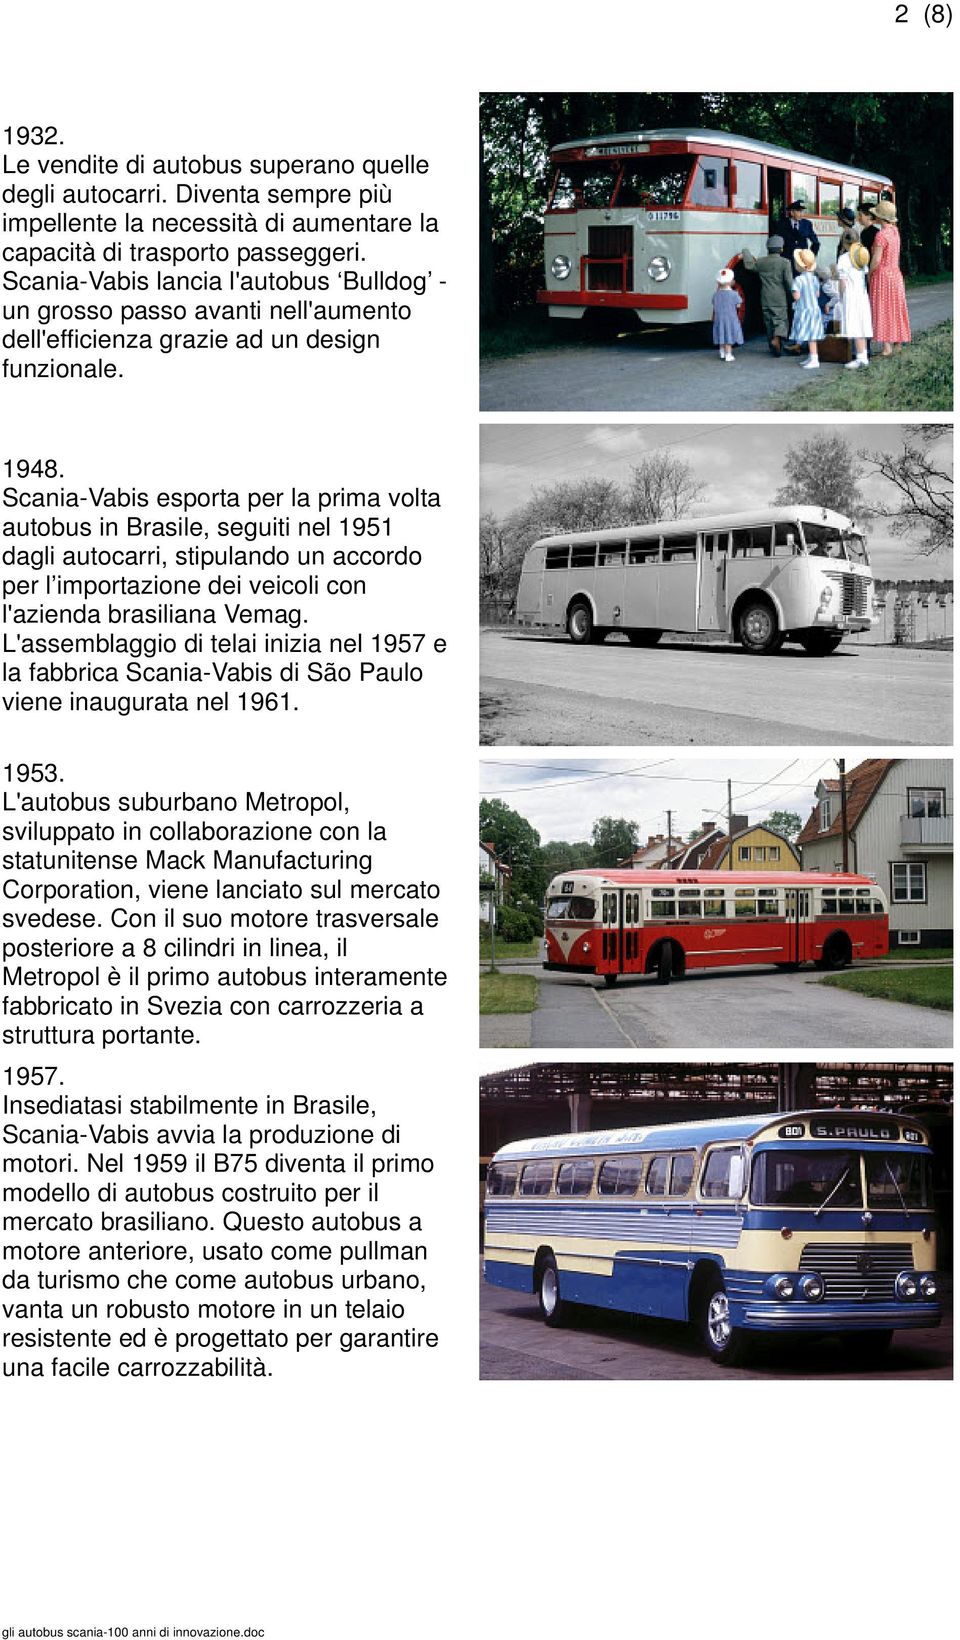 Scania-Vabis esporta per la prima volta autobus in Brasile, seguiti nel 1951 dagli autocarri, stipulando un accordo per l importazione dei veicoli con l'azienda brasiliana Vemag.